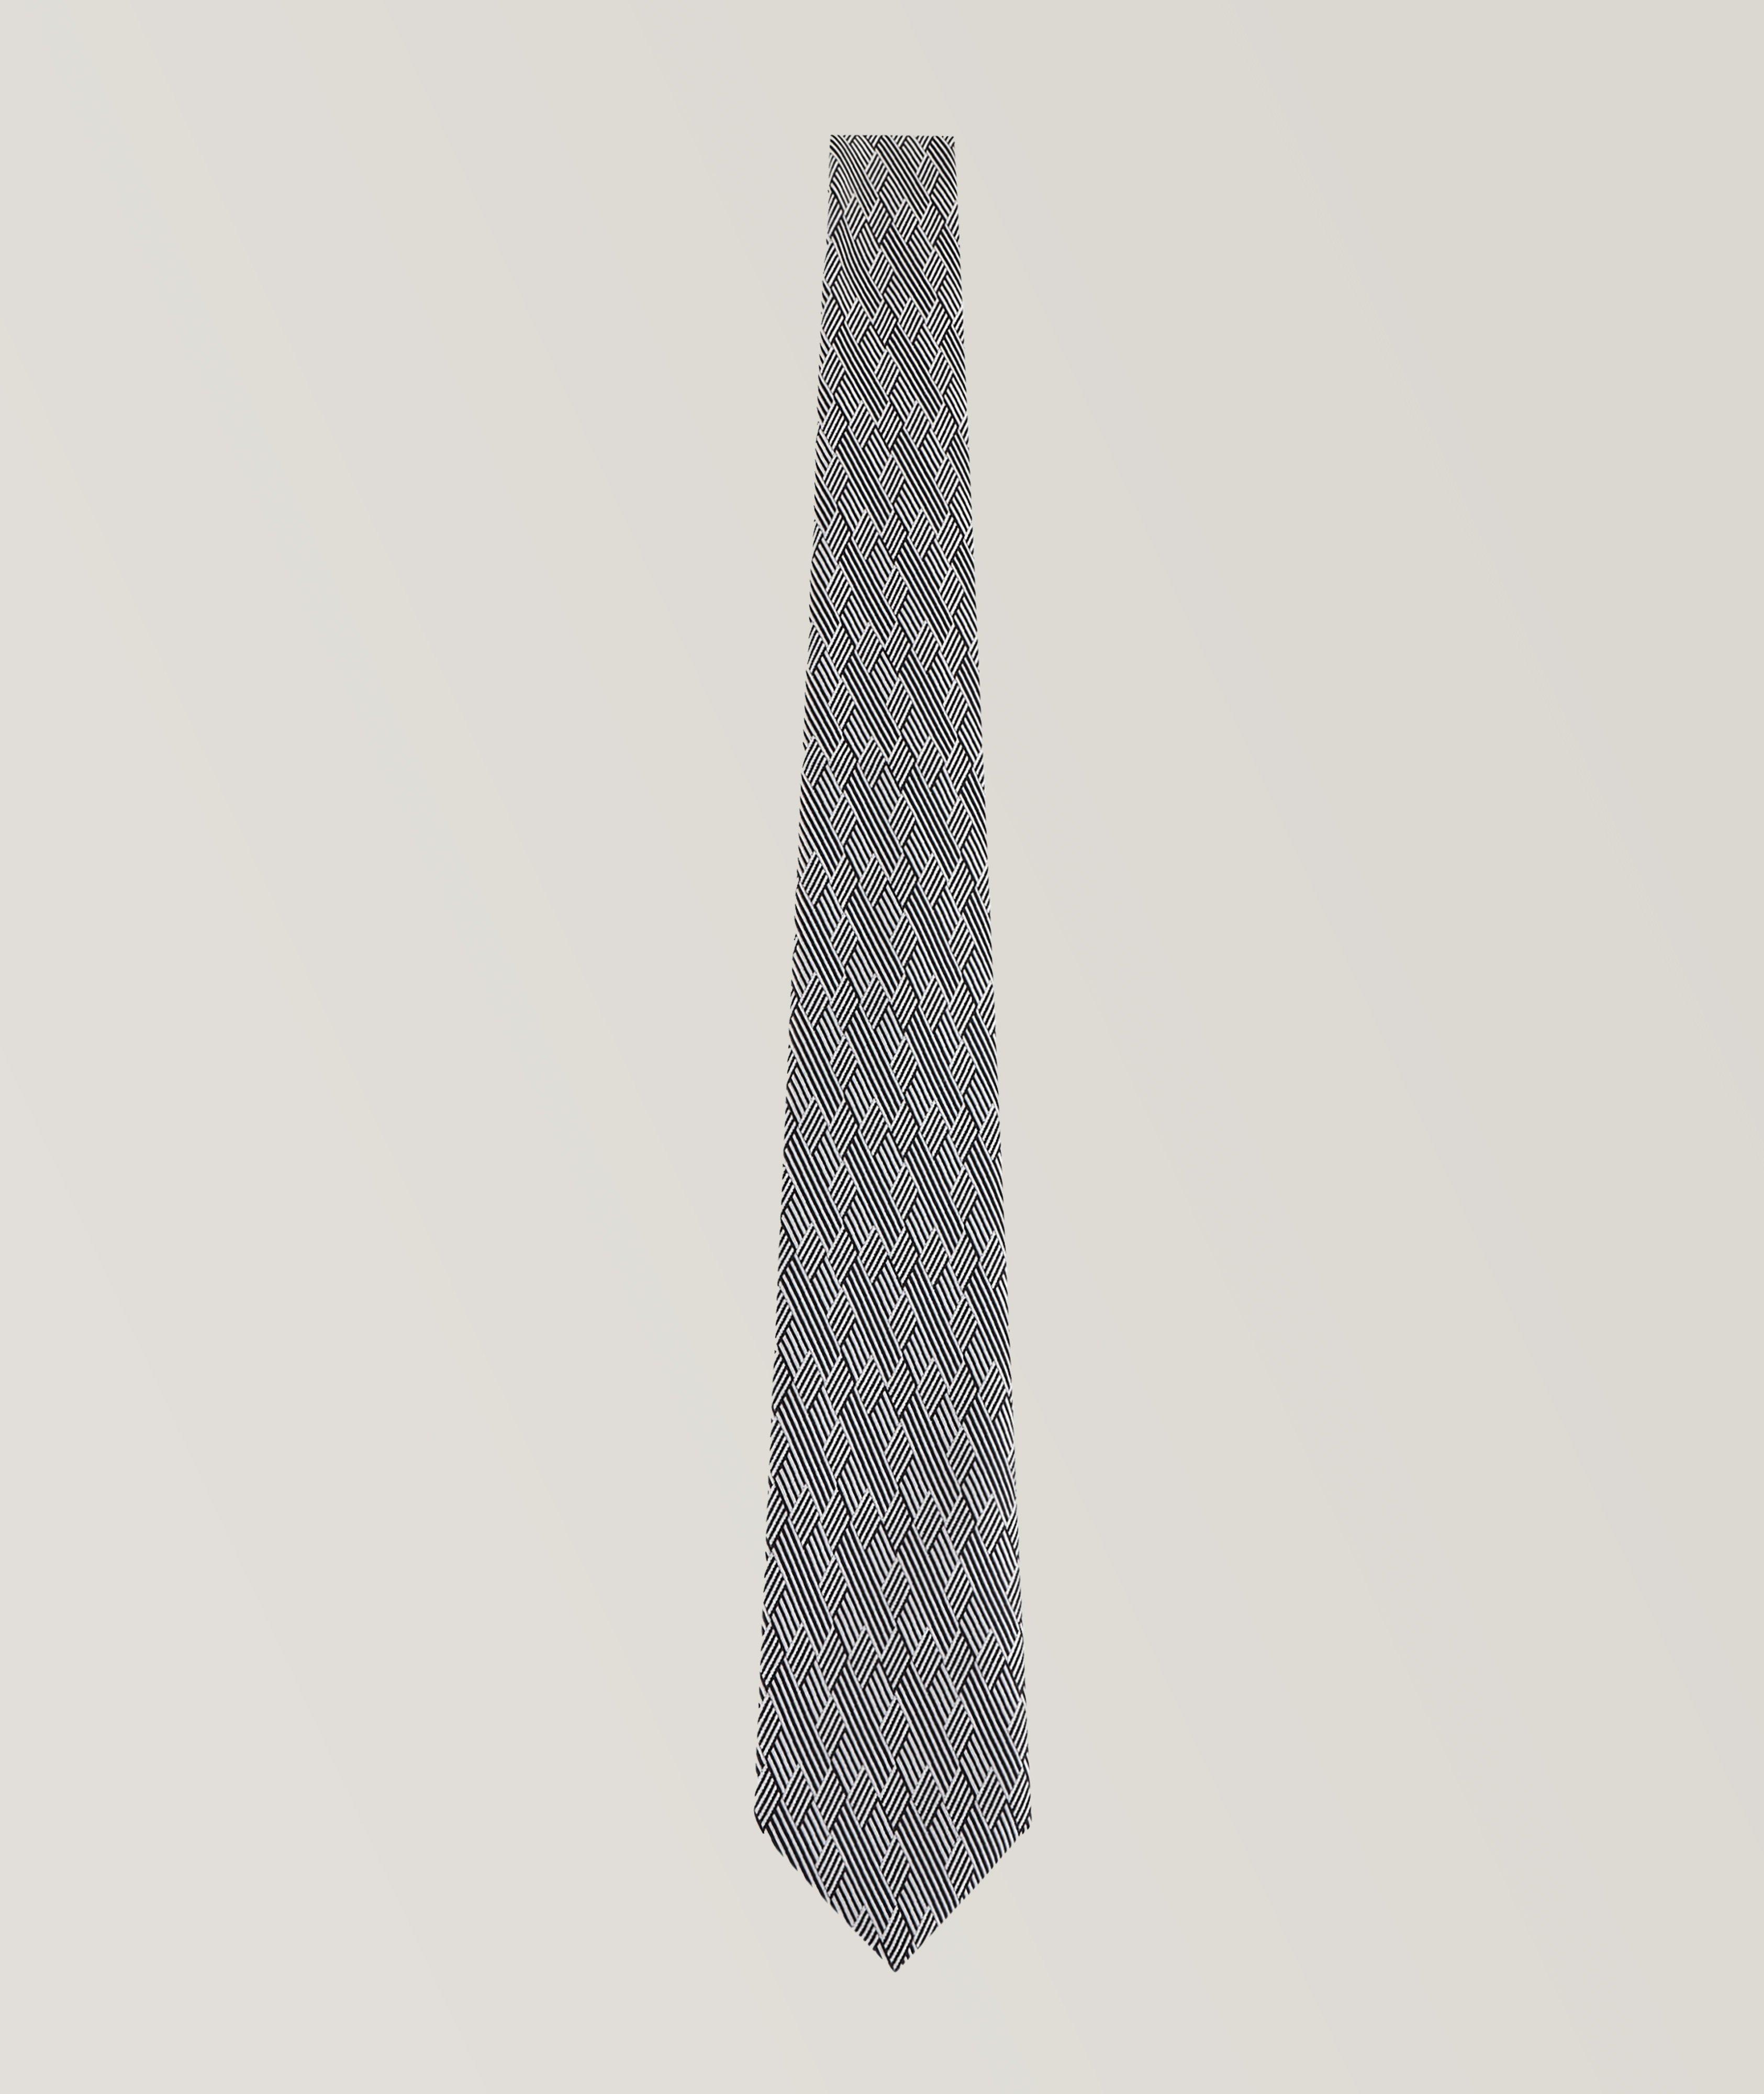 Cravate en soie à motif de style illusion d’optique image 0